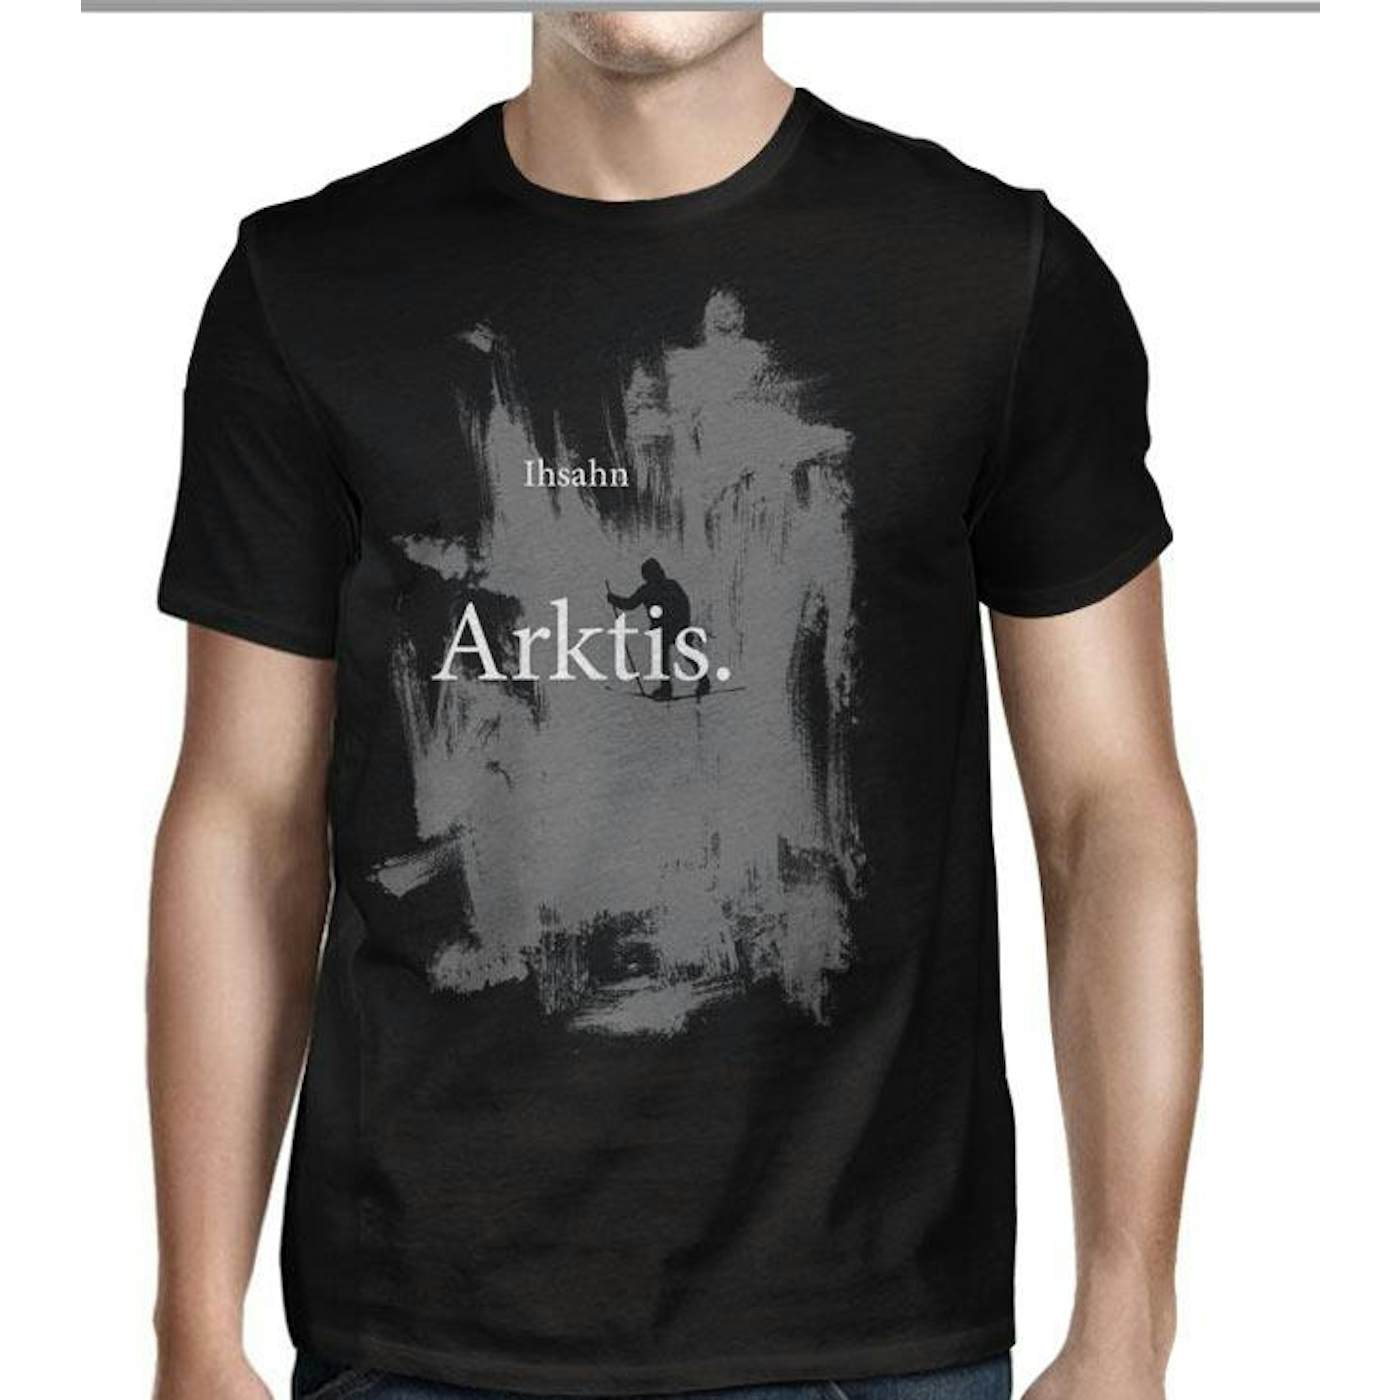 Ihsahn Arktis T-Shirt